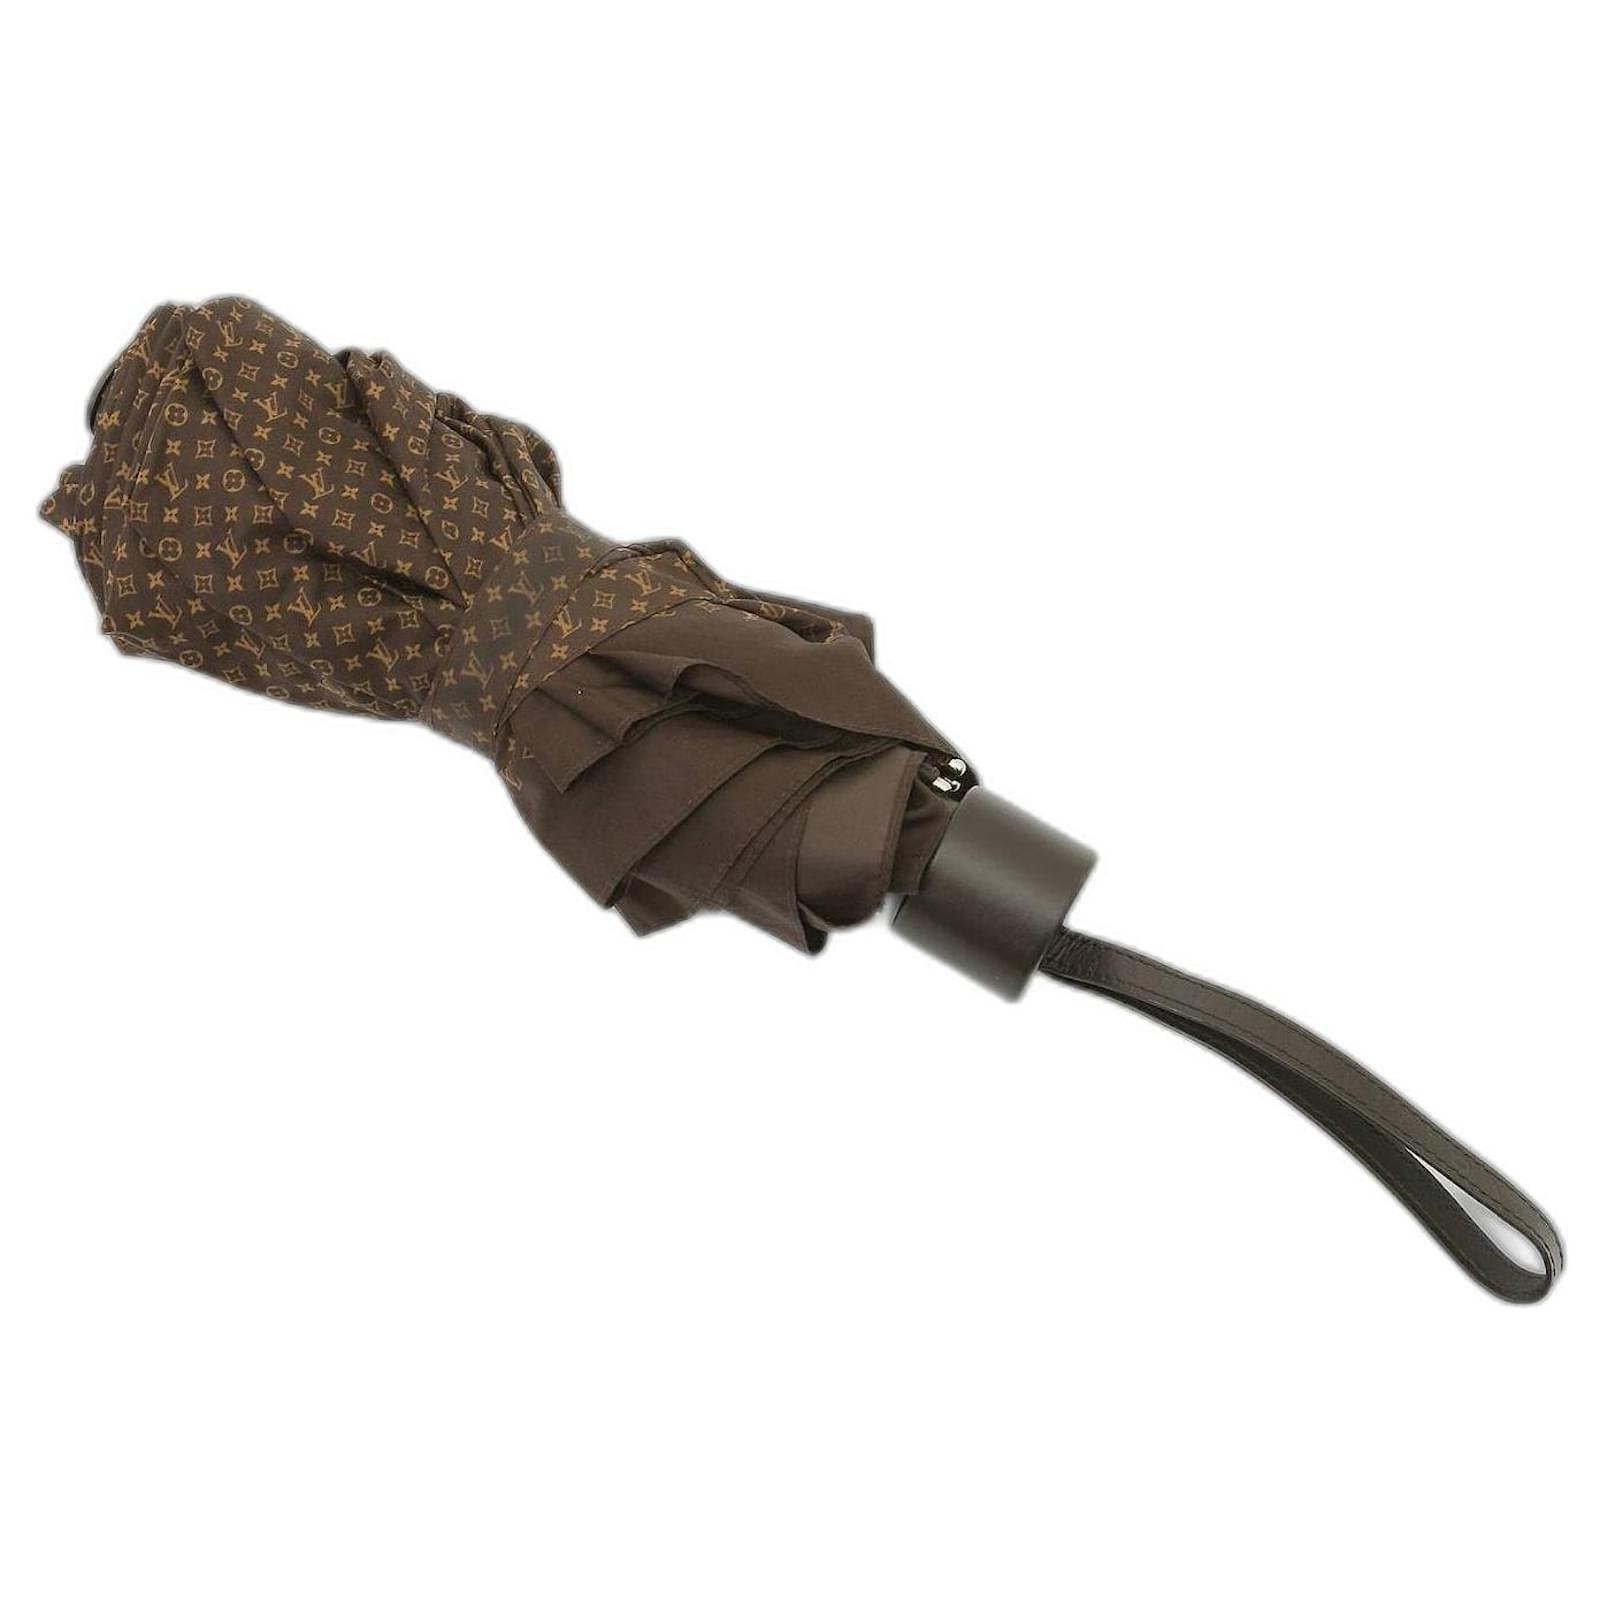 Parapluie Louis Vuitton 120 euros - Les trésors de cici